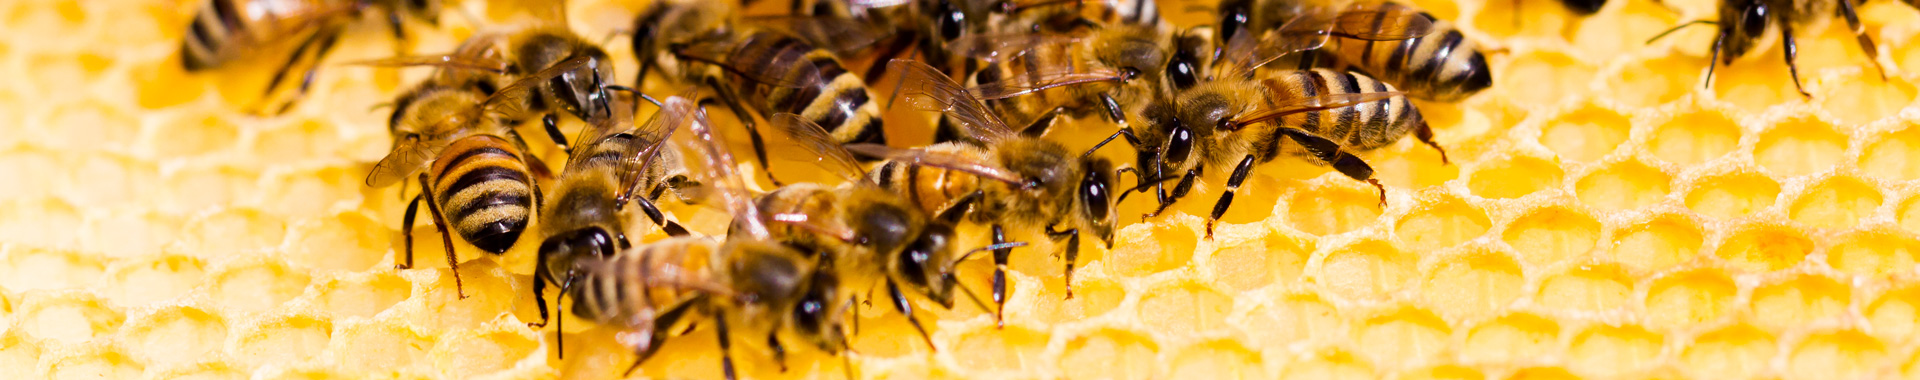 Einige Bienen sitzen auf einer Honigwabe